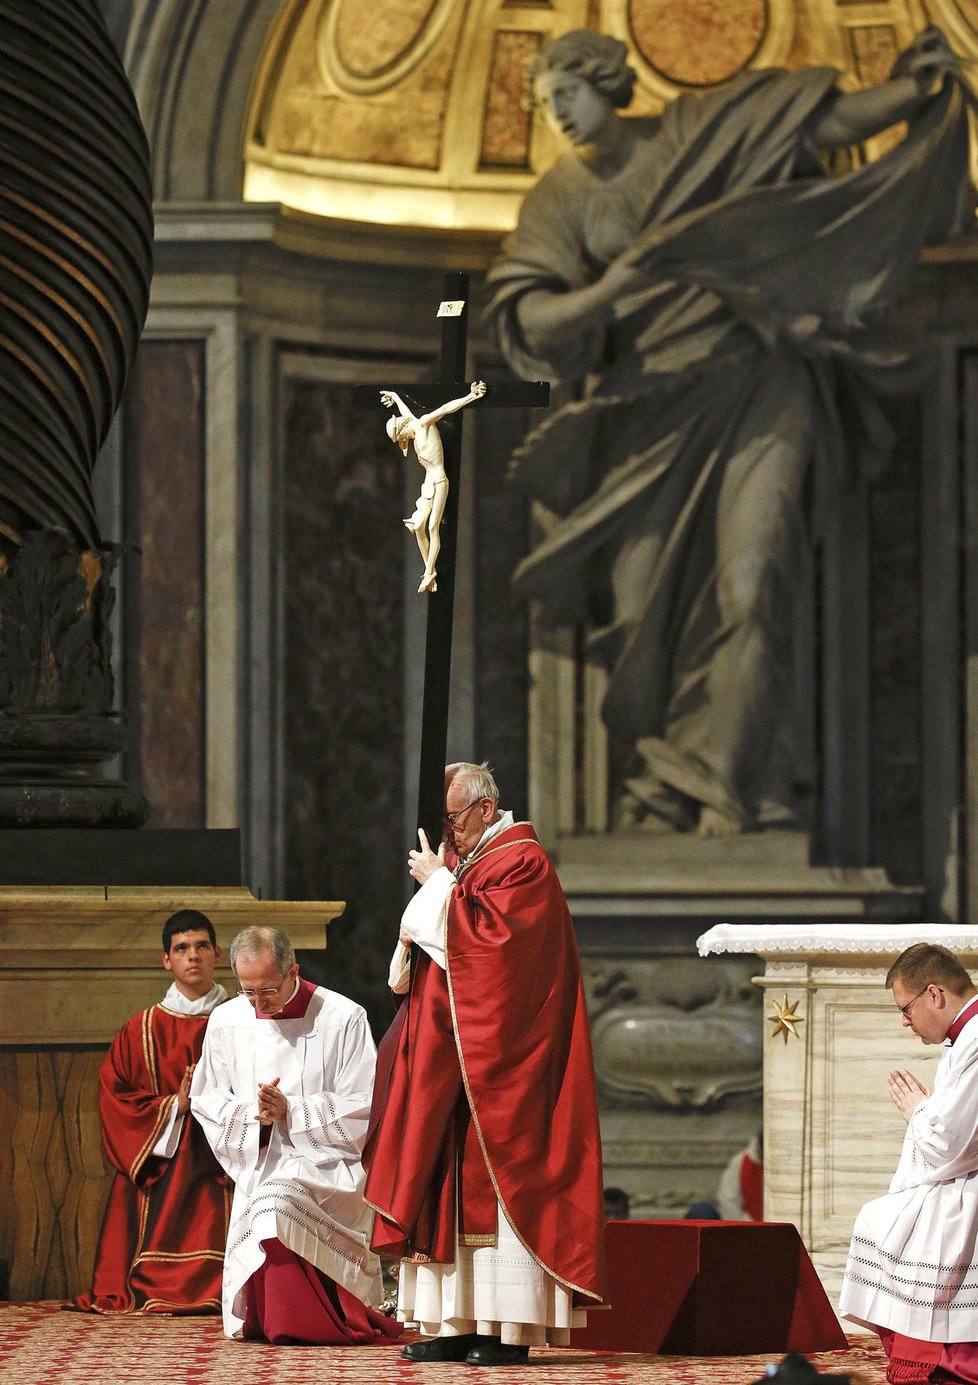 Papež František během mše na Velký pátek ve svatopetrské bazilice